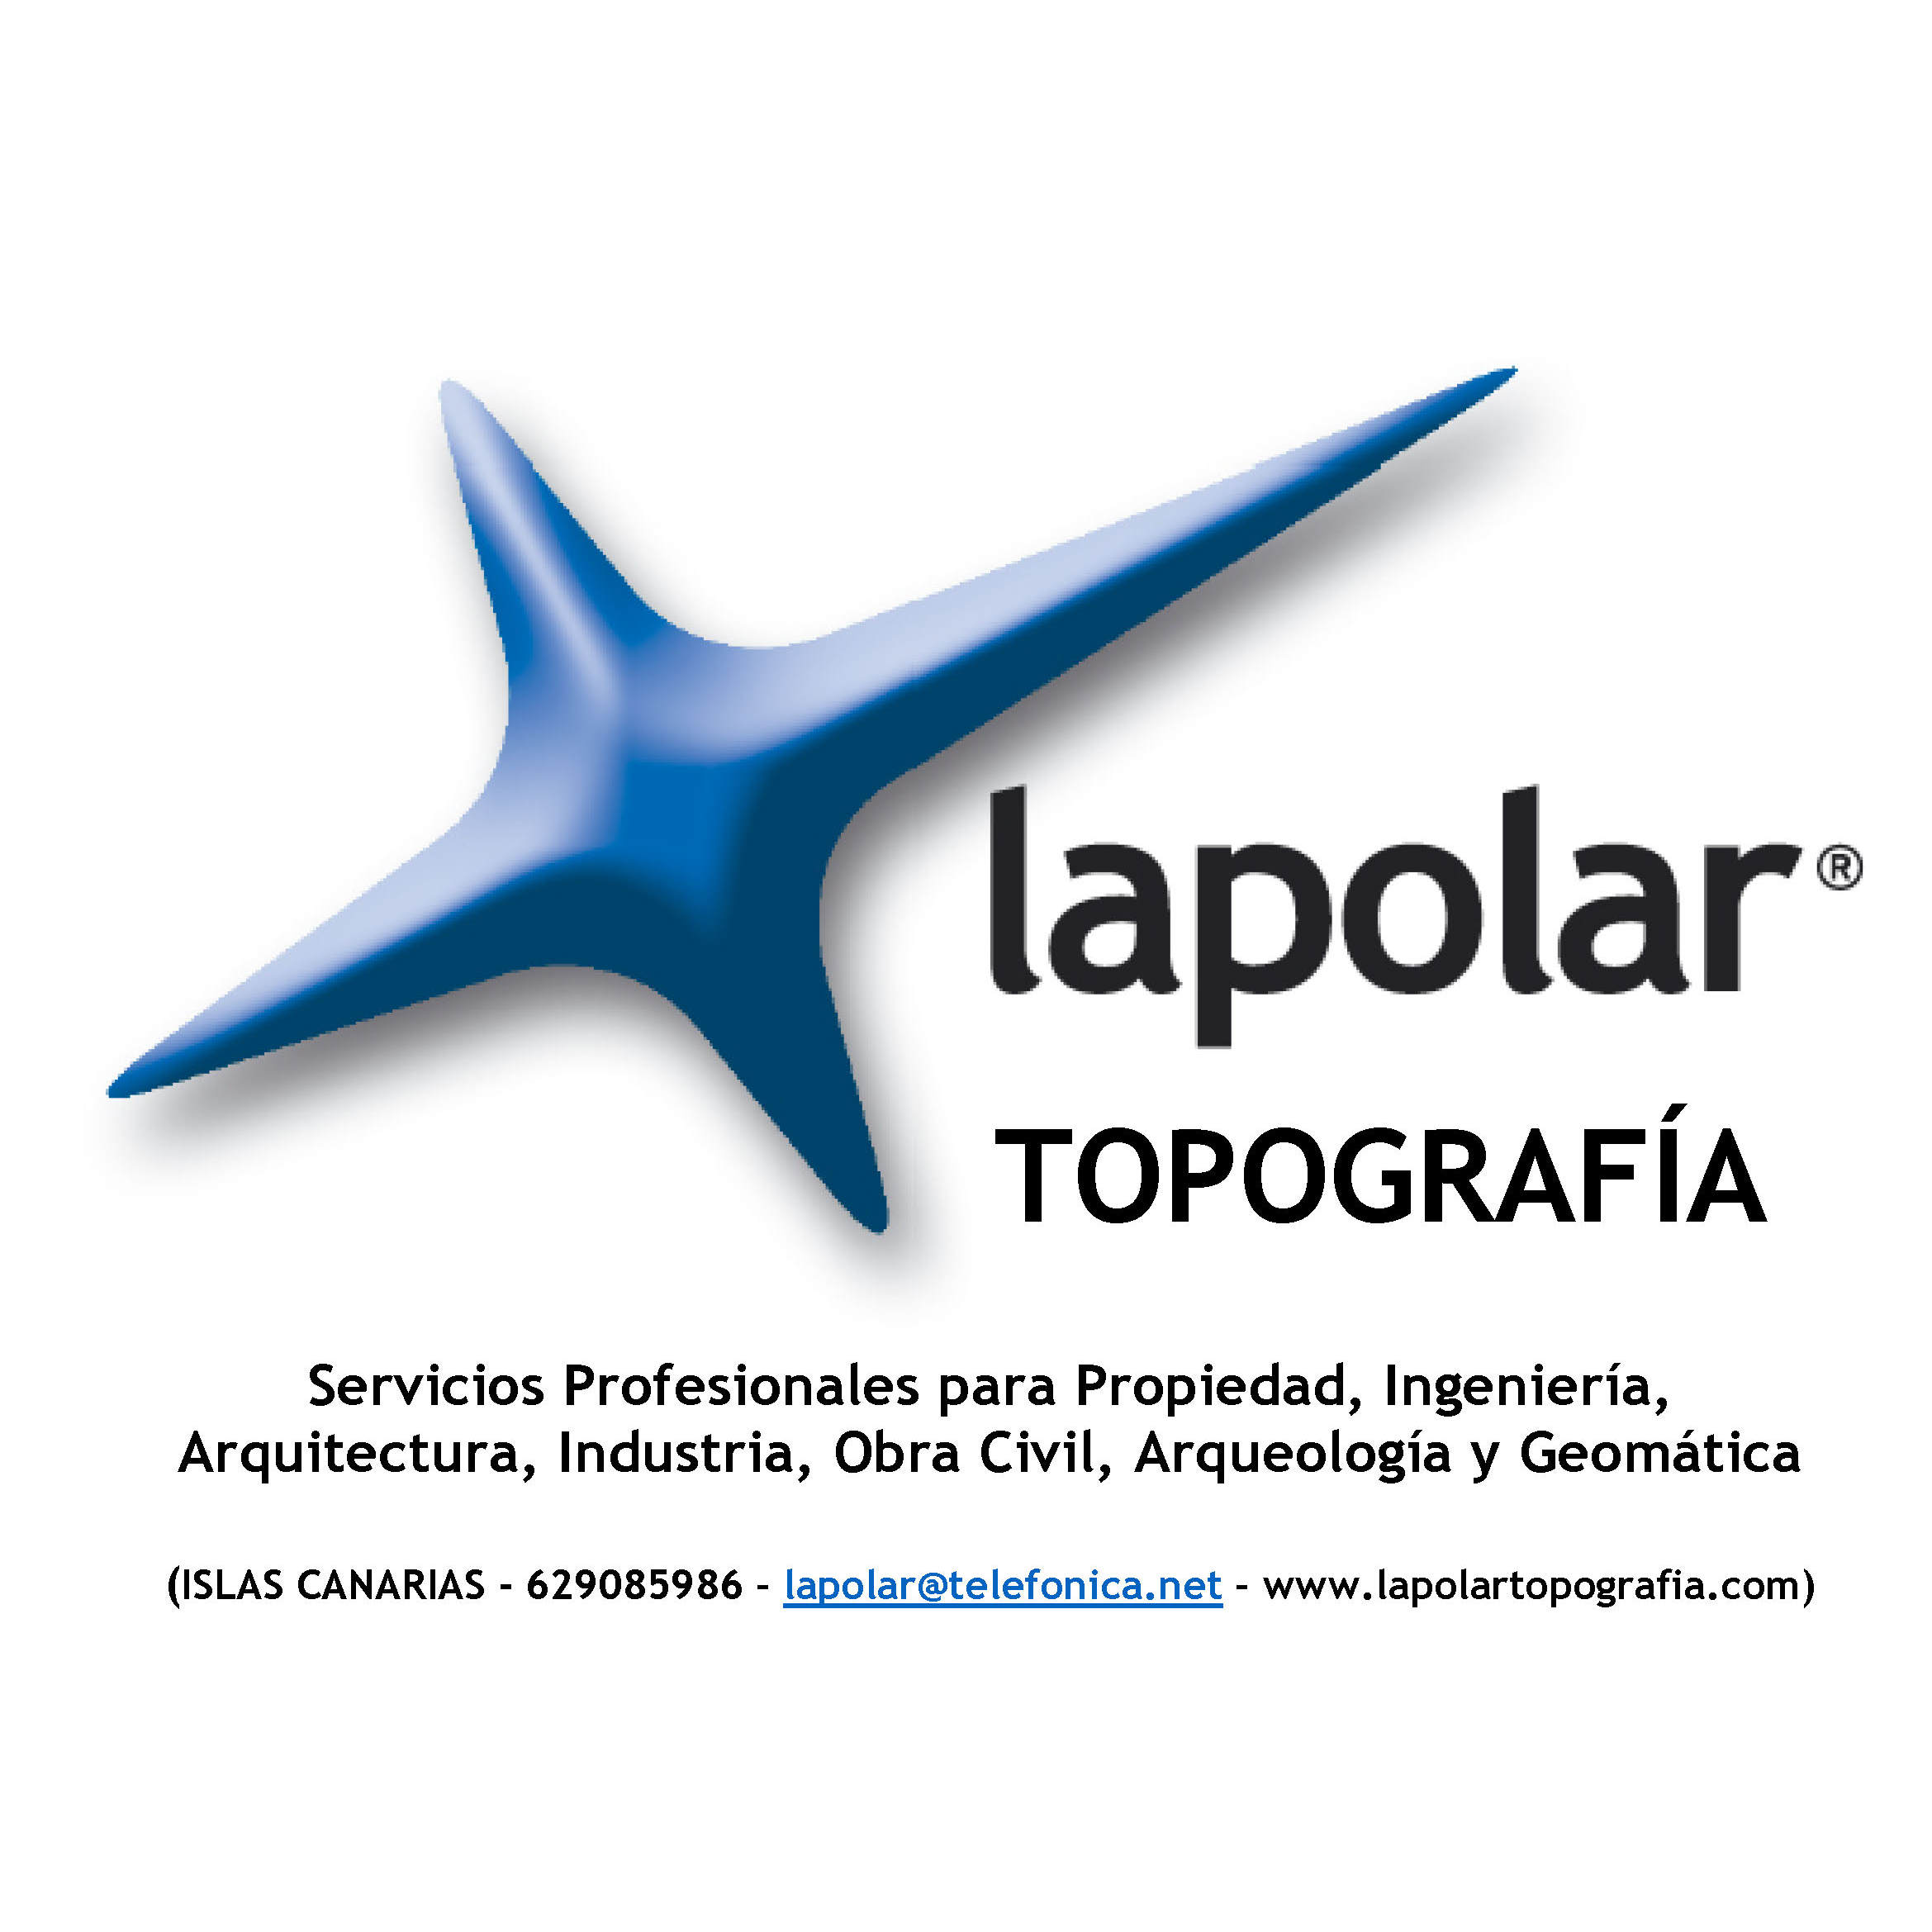 La Polar Topografía Logo